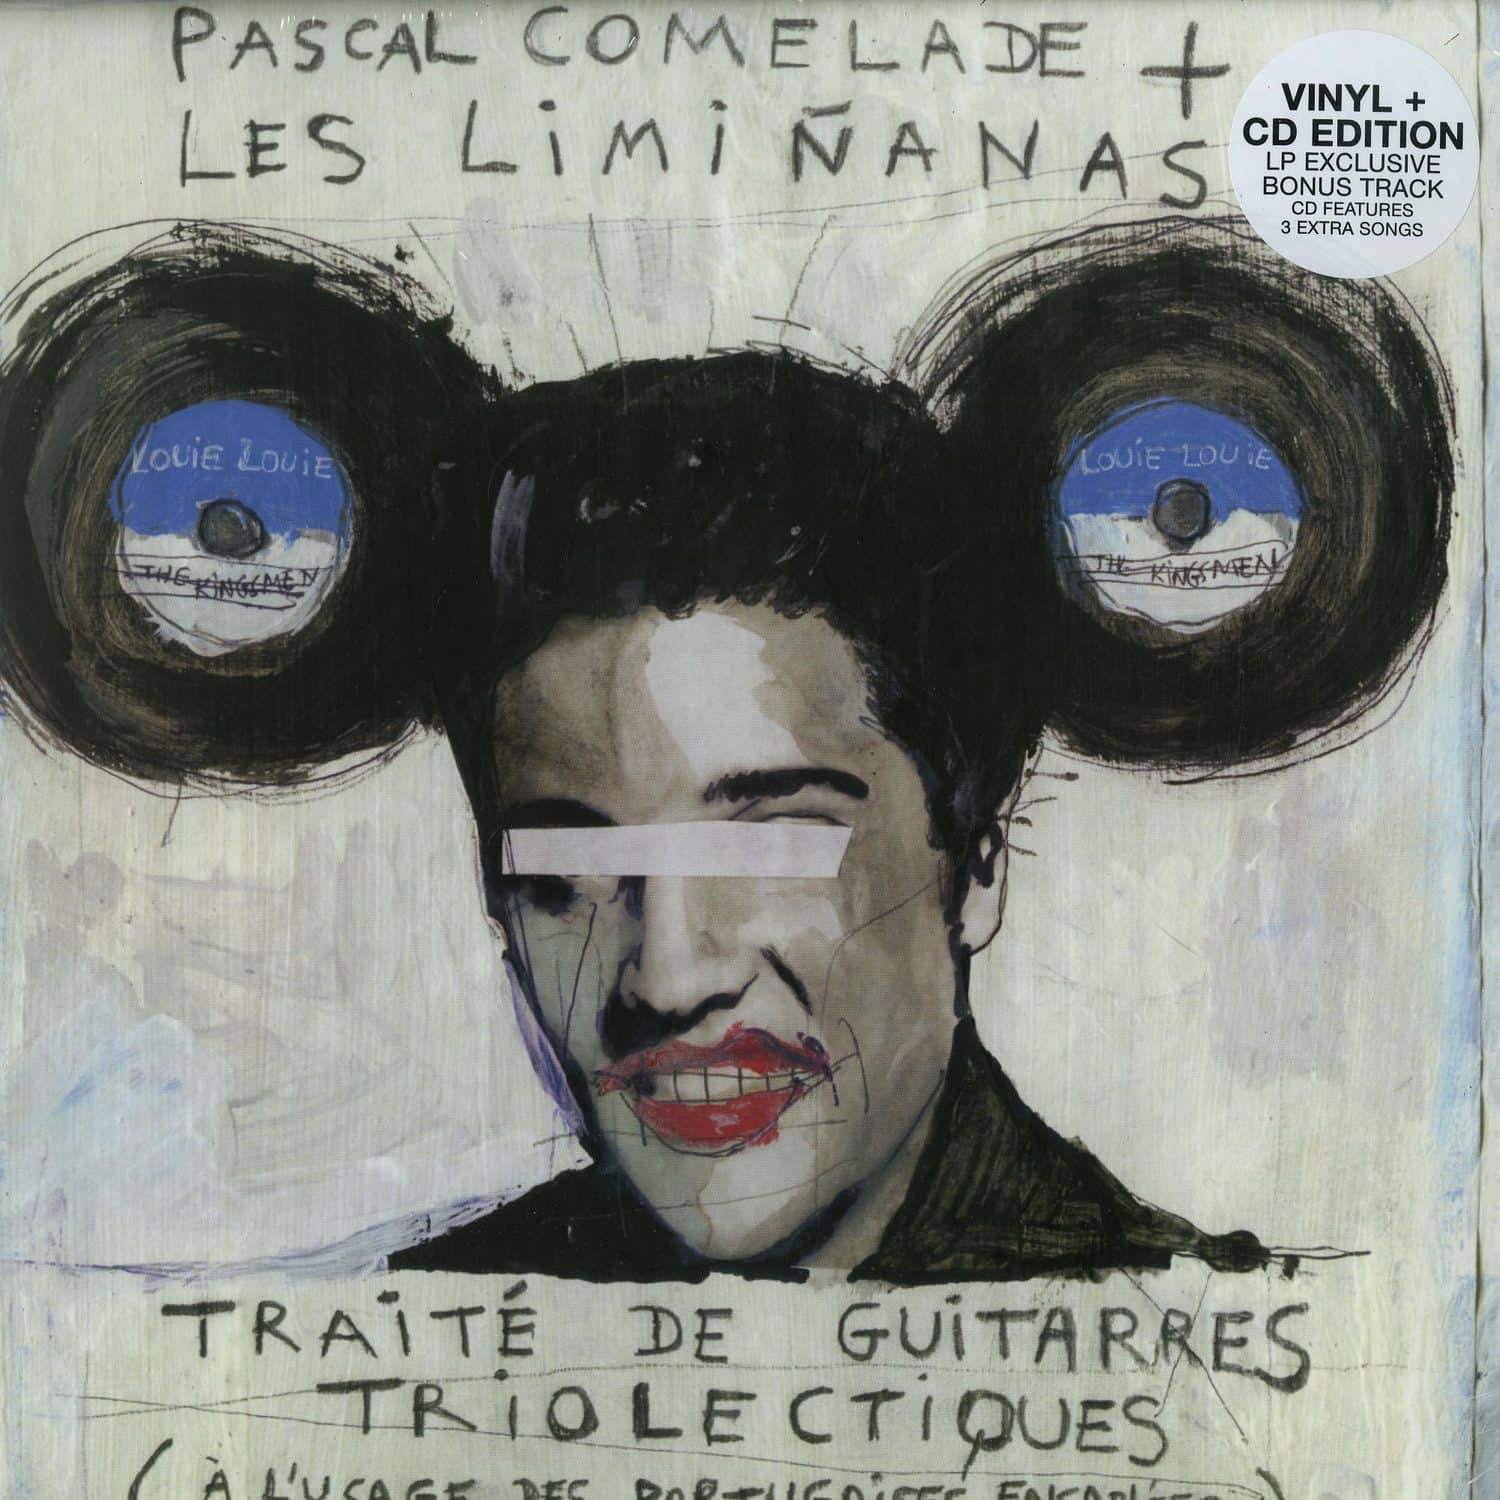 Pascal Comelade + Les Liminanas - TRAITE DE GUITARRES TRIOLECTIQUES 